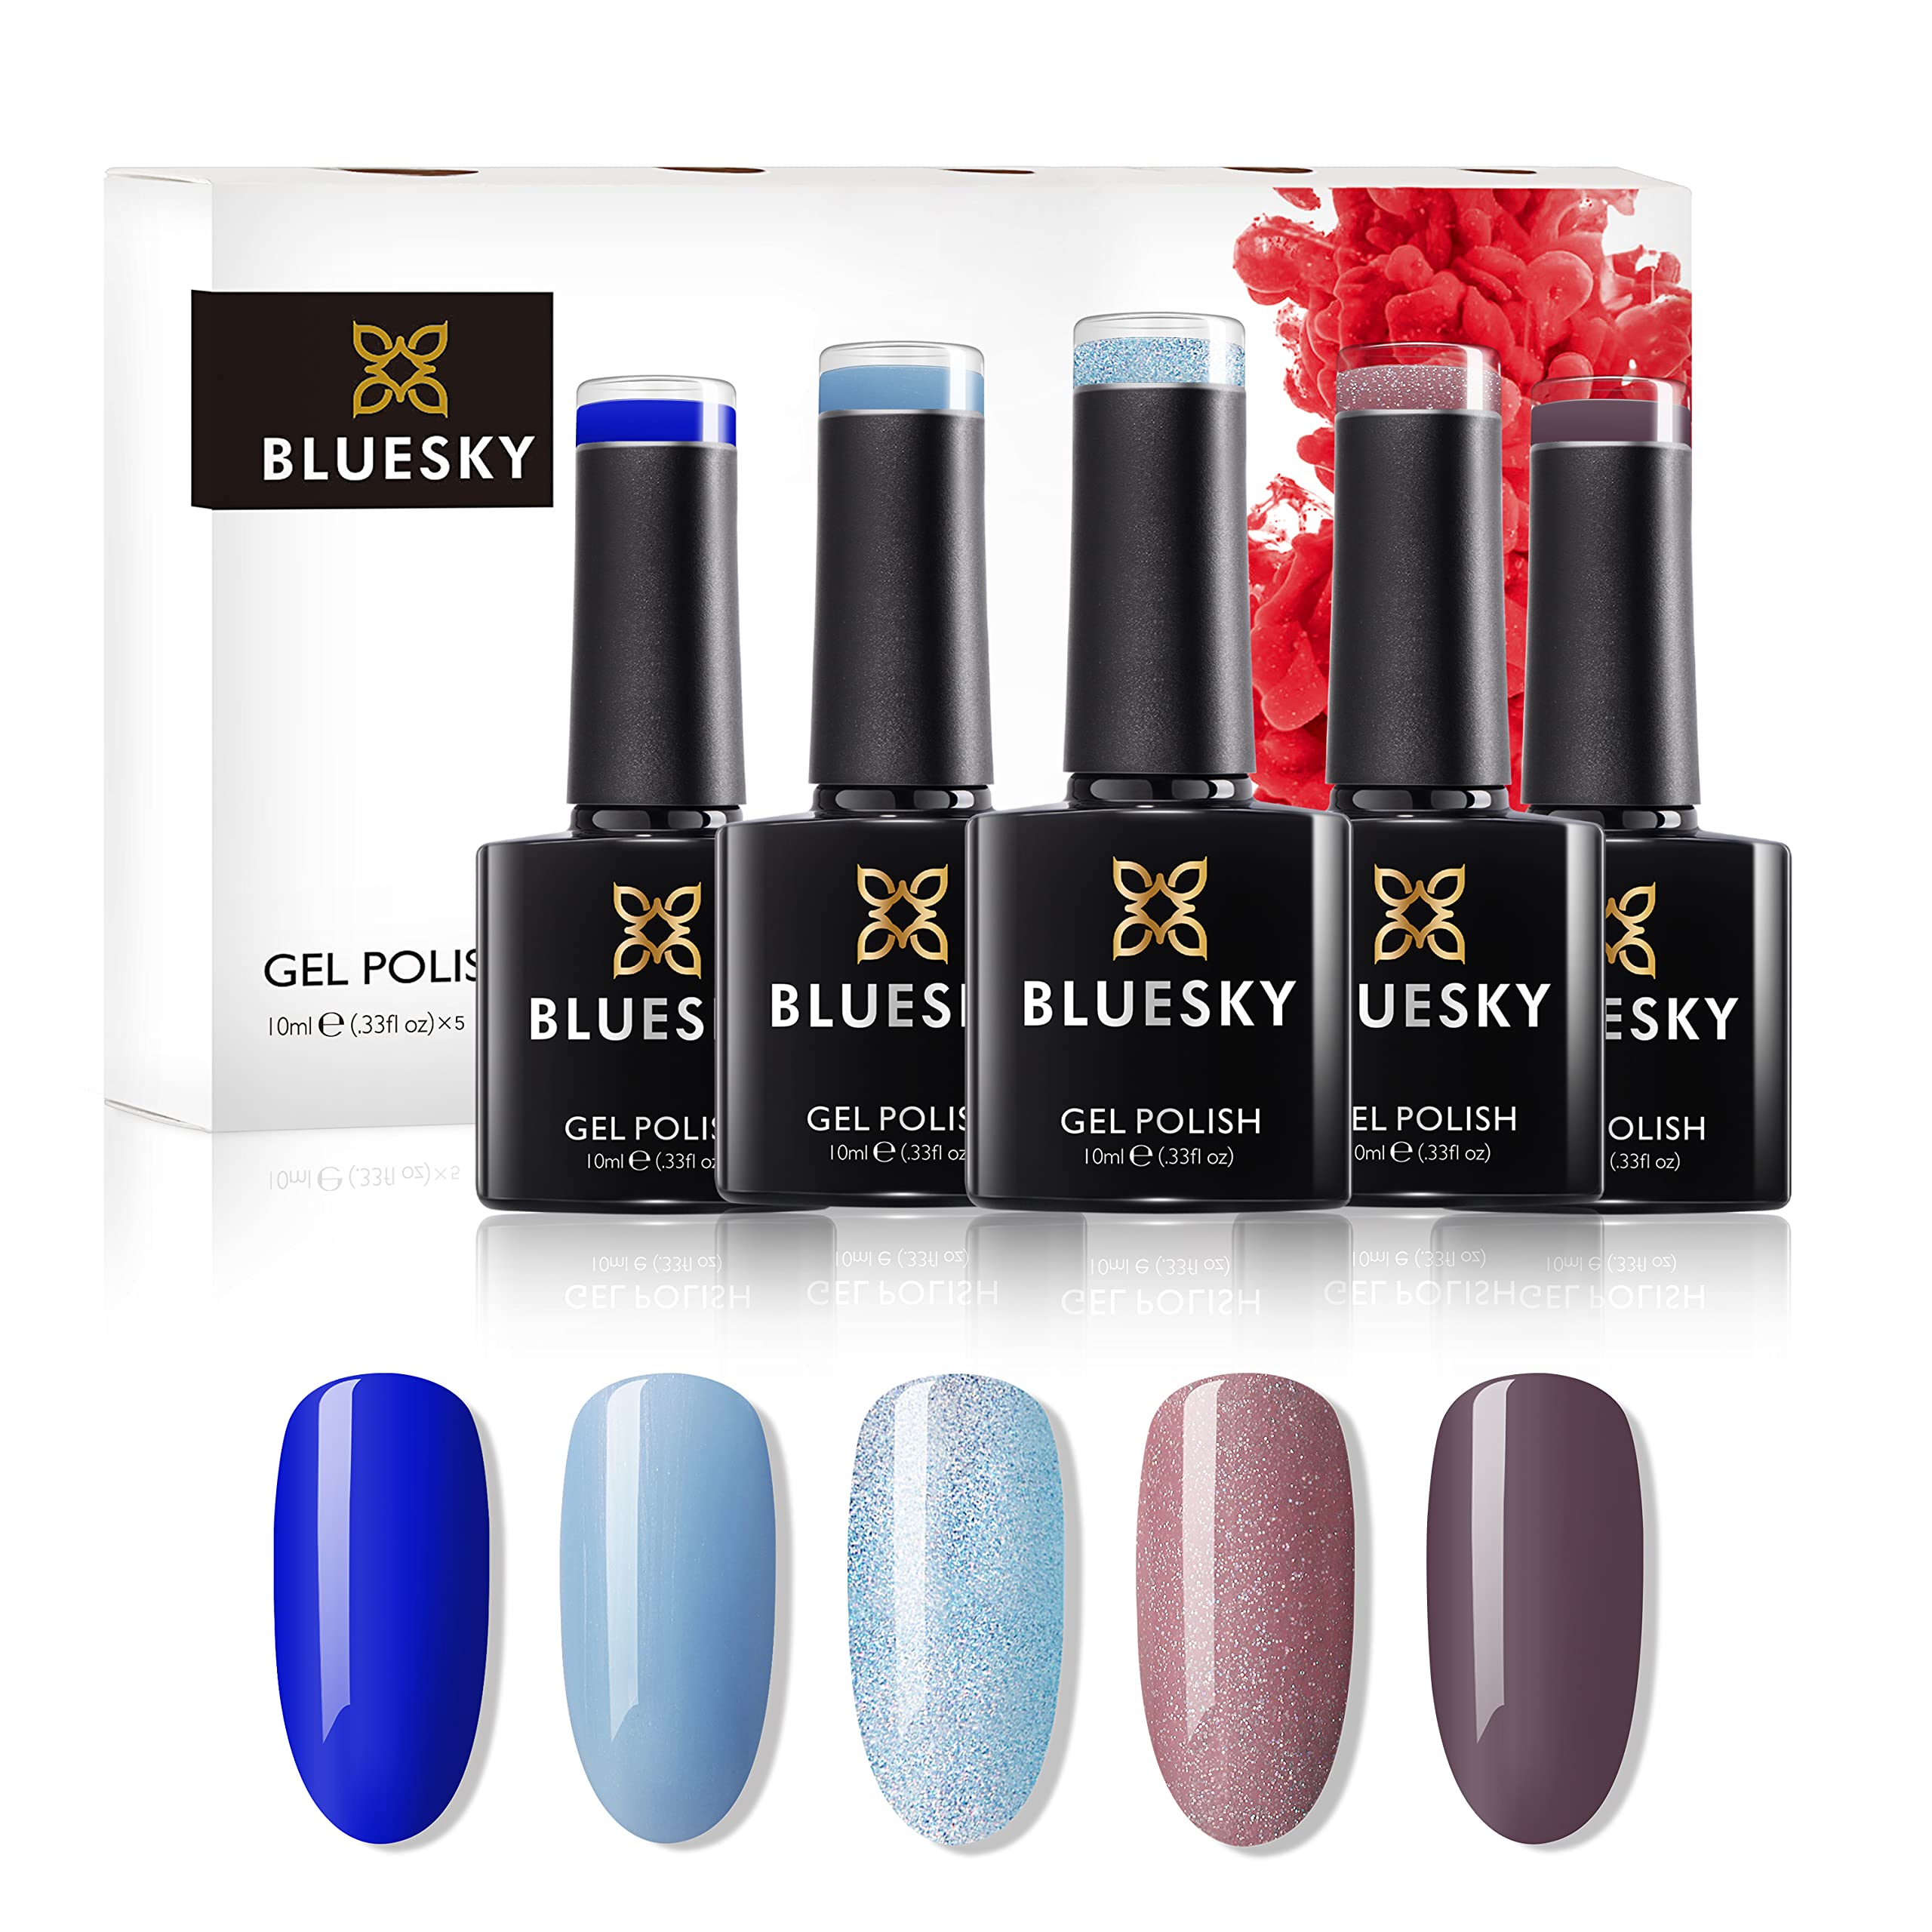 BLUESKY Gelnagellack Set | 5/6 UV Lacke zum Preis von 4/5 | Gel-Nagellack für glänzende und schöne Nägel | langer Halt von bis zu 3 Wochen (BLUESKY Chillout 5er Set)